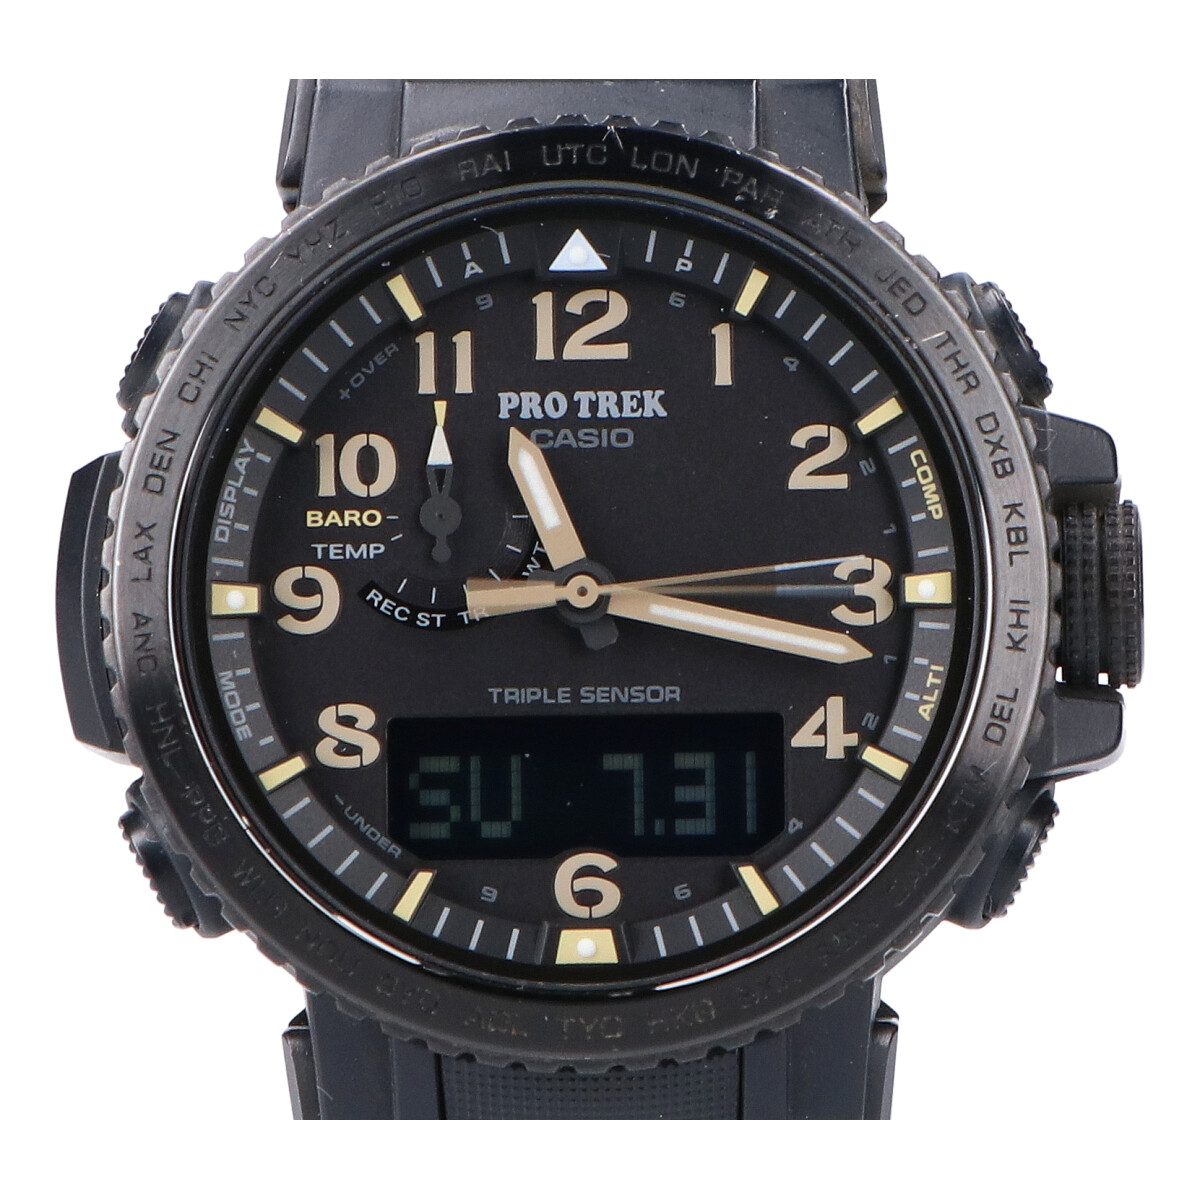 カシオのPRW-50FC-1JF プロトレッククライマーライン マルチバンド6 タフソーラー電波アナデジ腕時計の買取実績です。